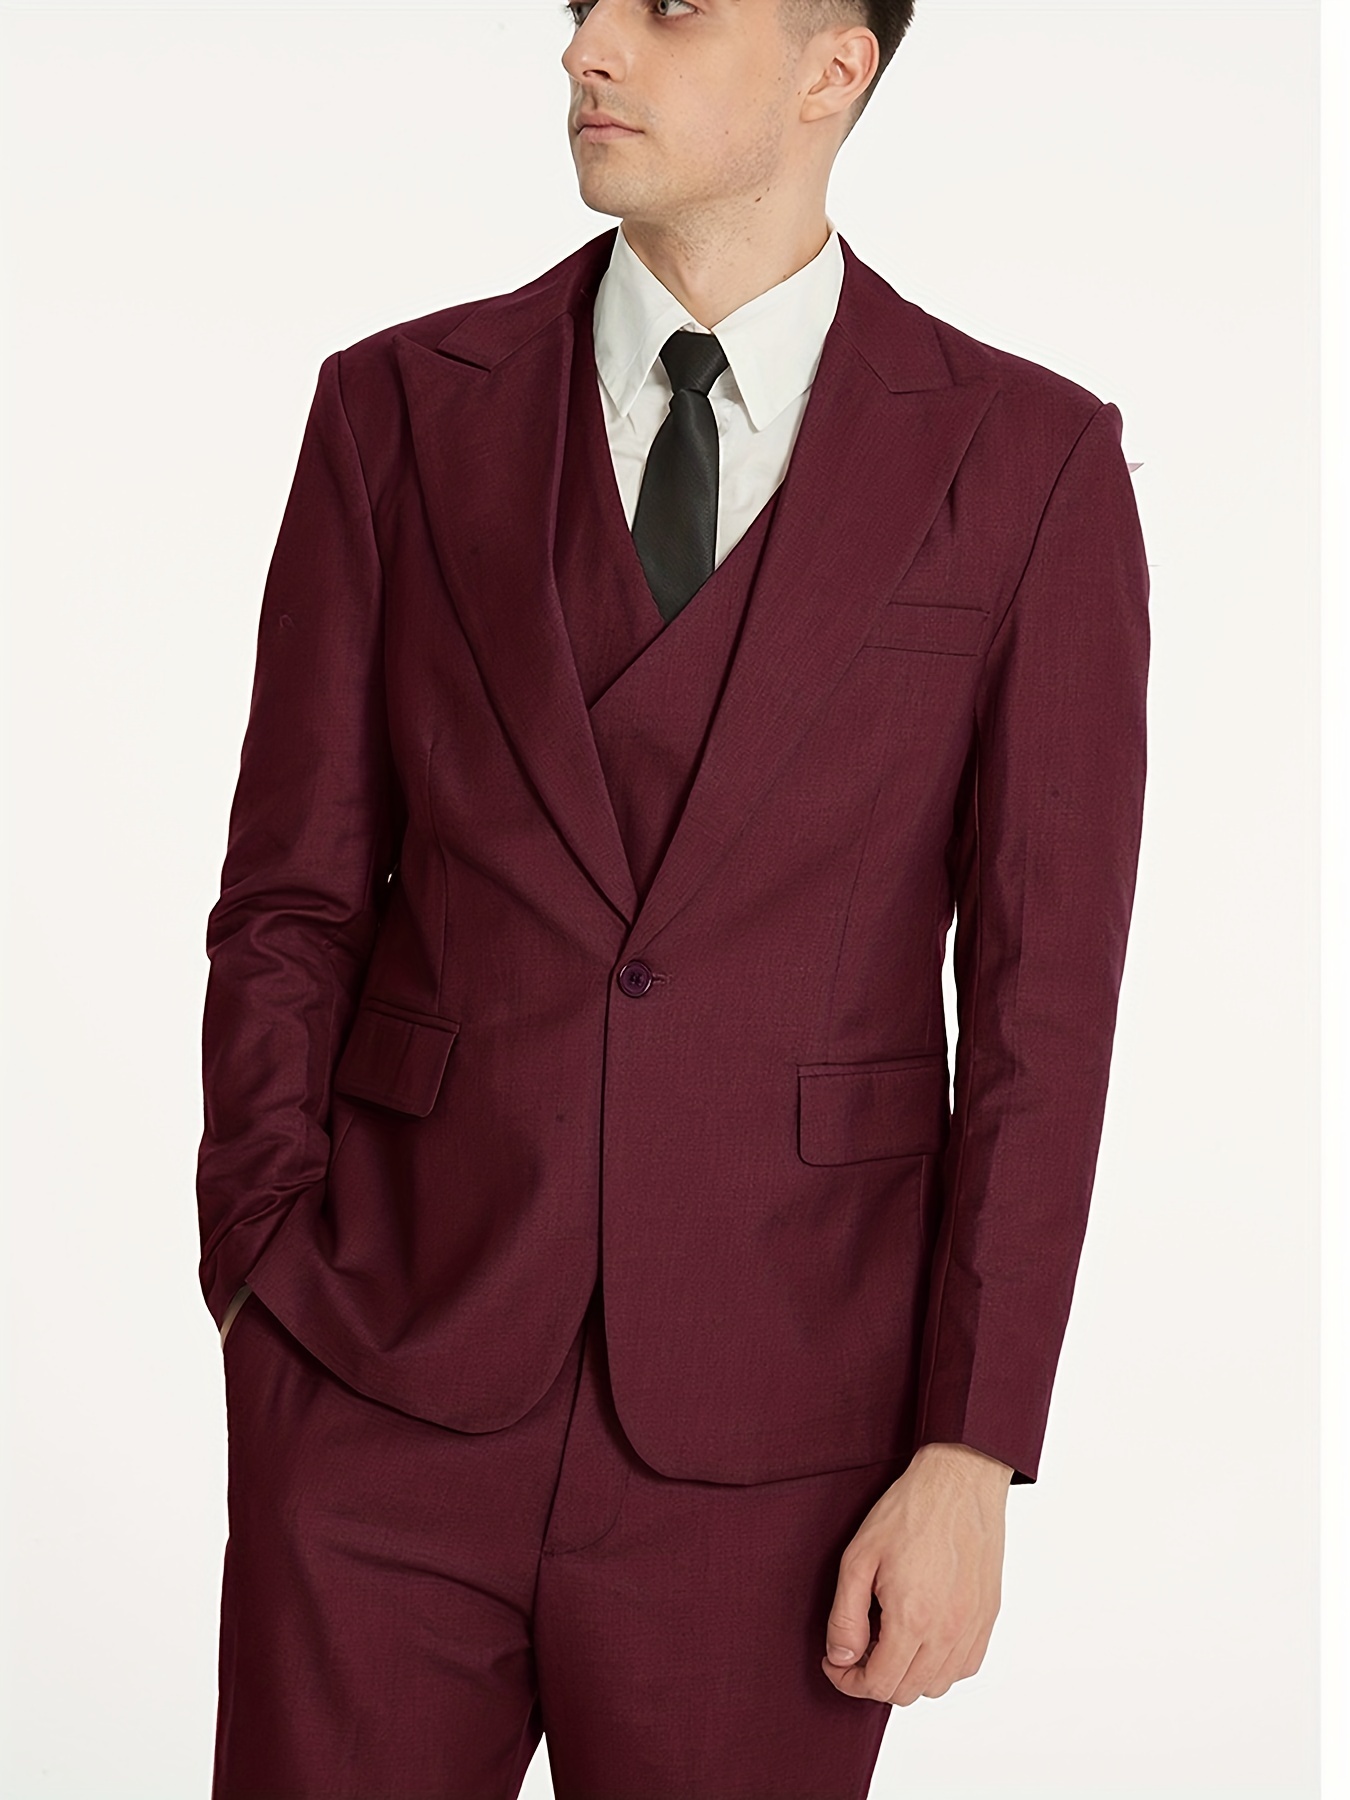 3pcs Men's Slim Two-color Business Suit